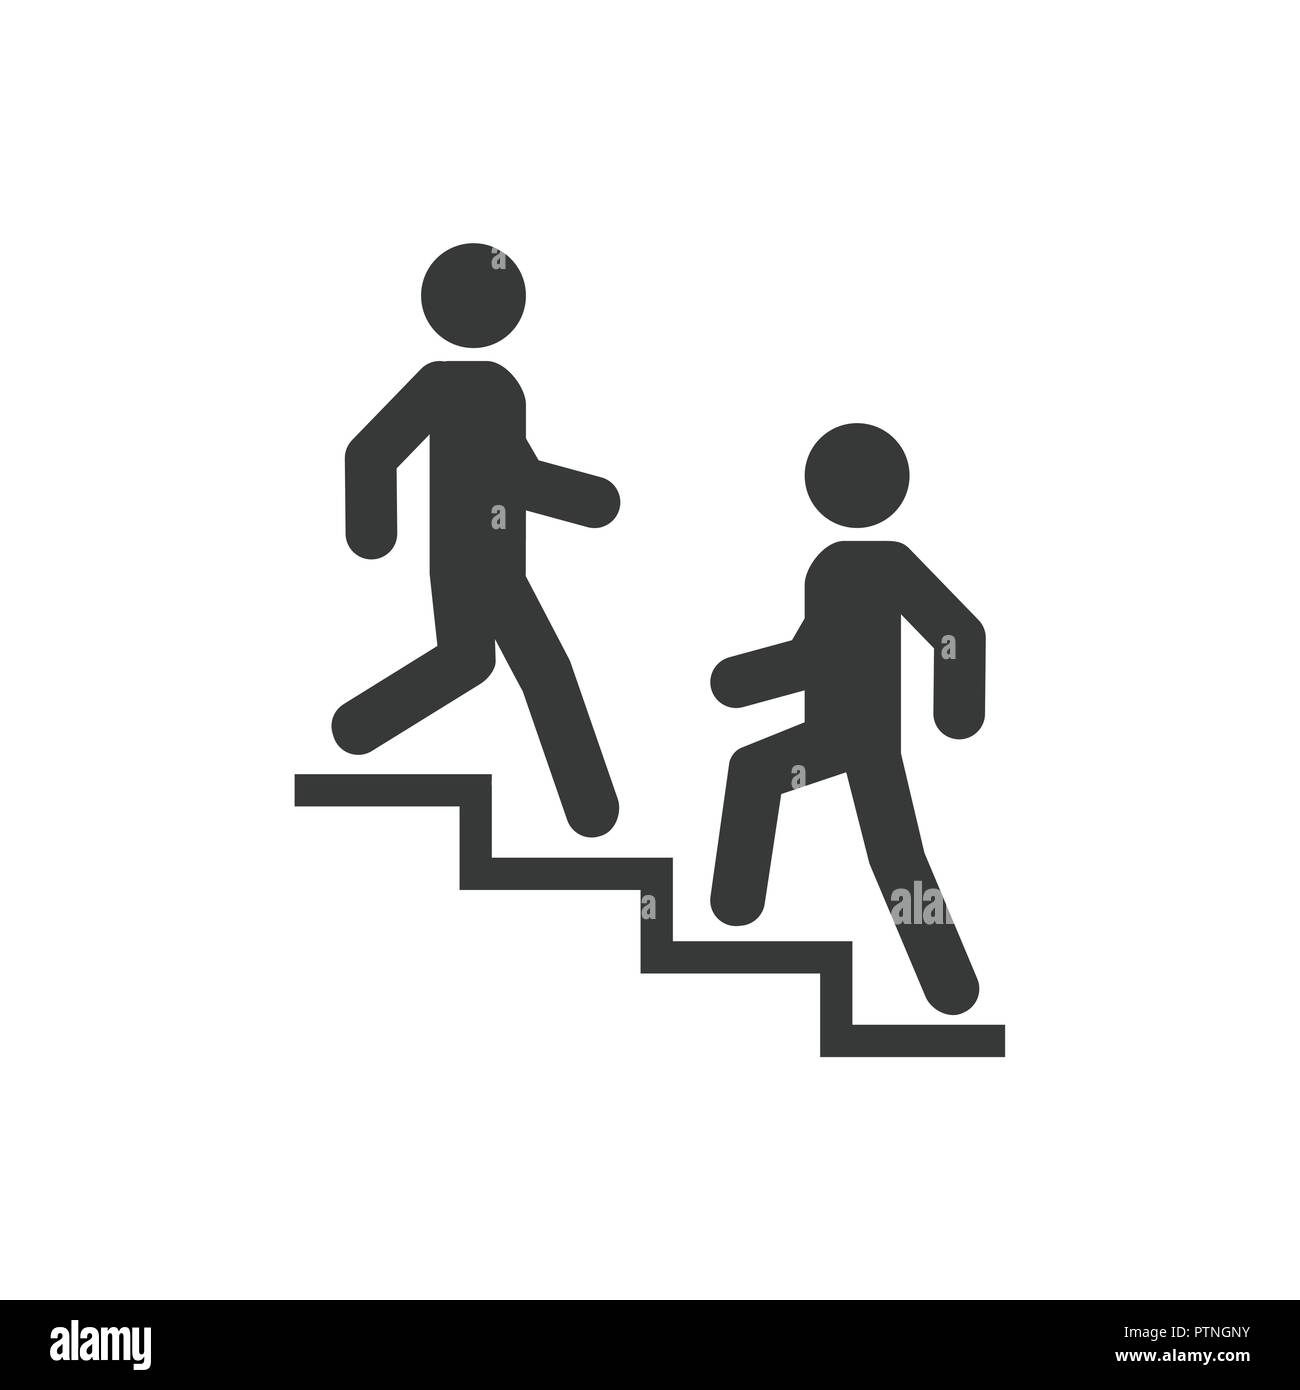 Al piano di sopra al piano di sotto-icona segno. Alzarsi e camminare uomo  in scale. Simbolo di carriera. design piatto. Illustrazione Vettoriale  Immagine e Vettoriale - Alamy